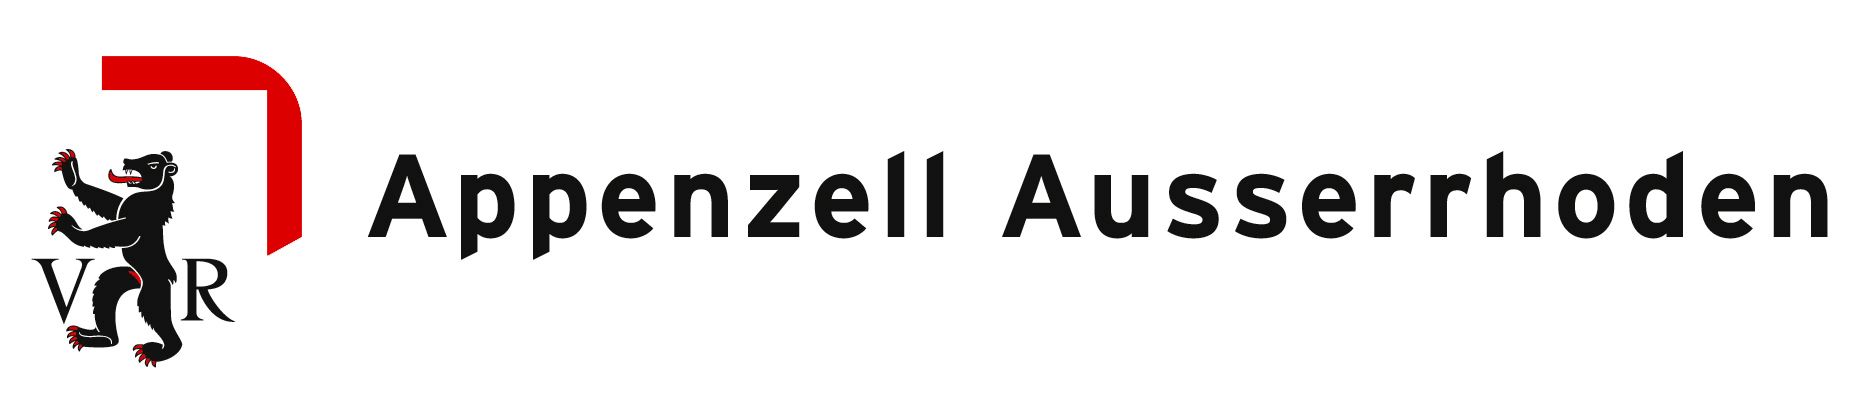 Logo Appenzell Ausserrhoden (Link)